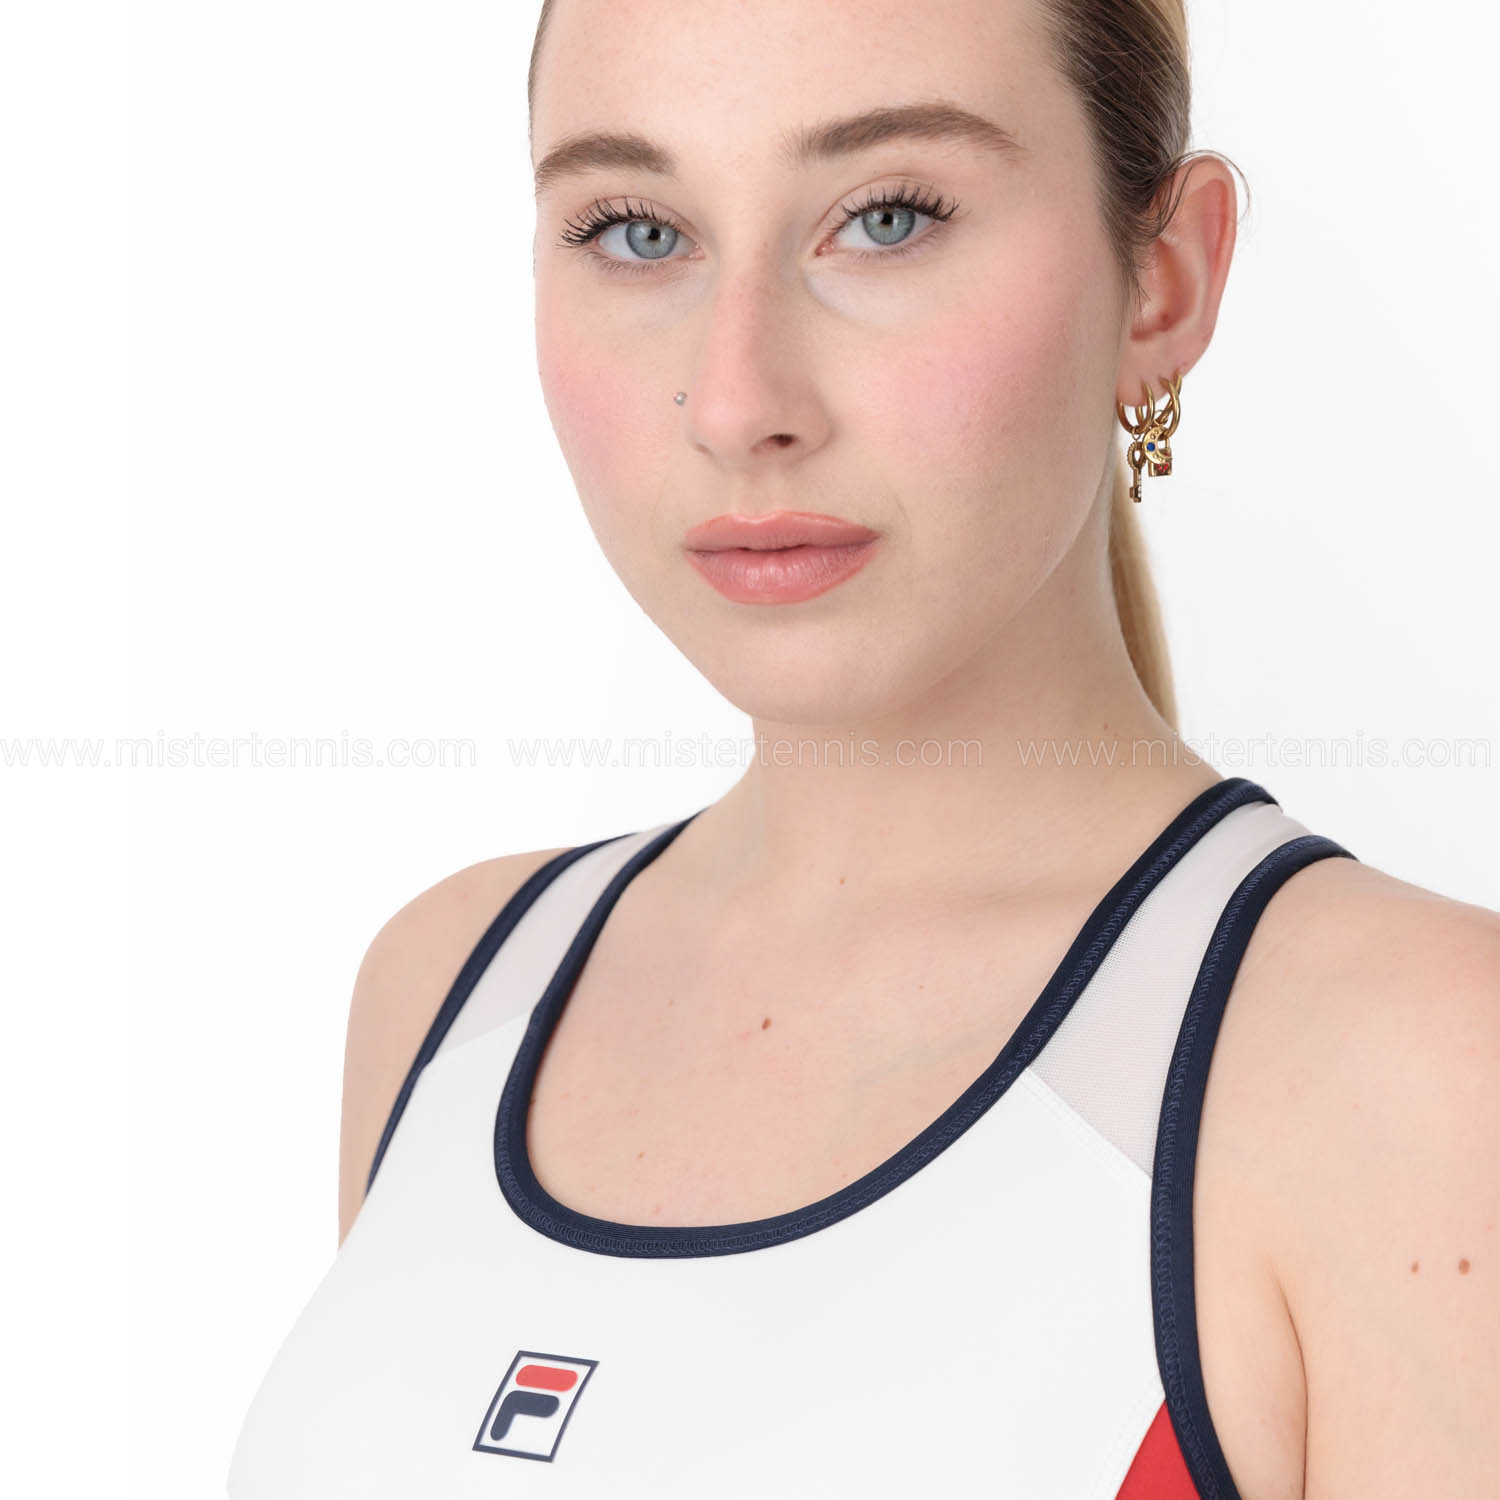 Fila Yuna Women's Sports Bra - White/Navy